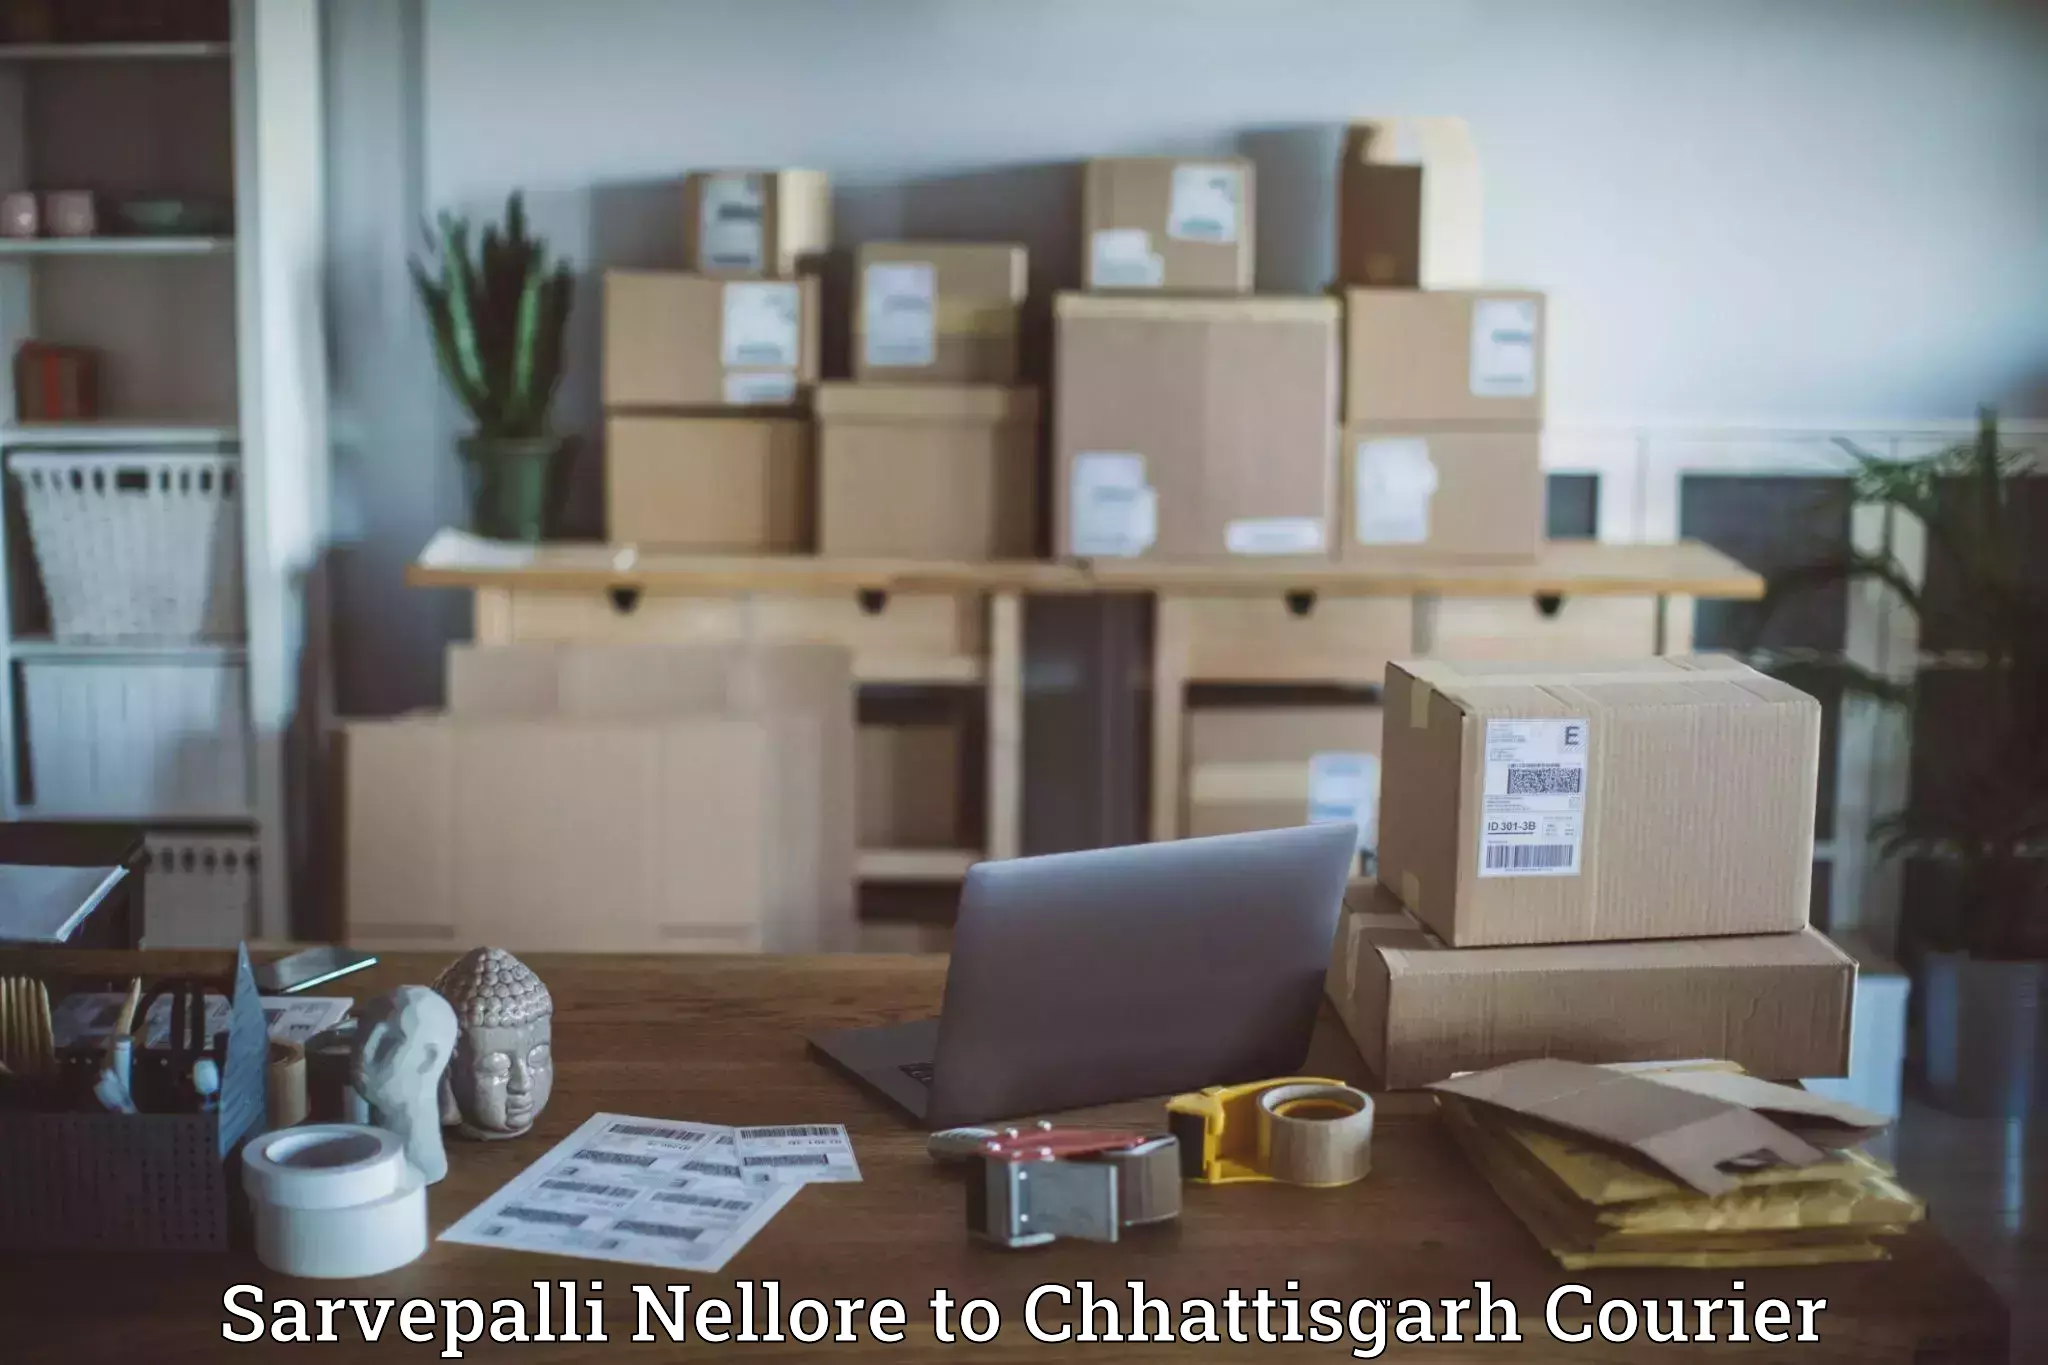 Business delivery service Sarvepalli Nellore to Bijapur Chhattisgarh